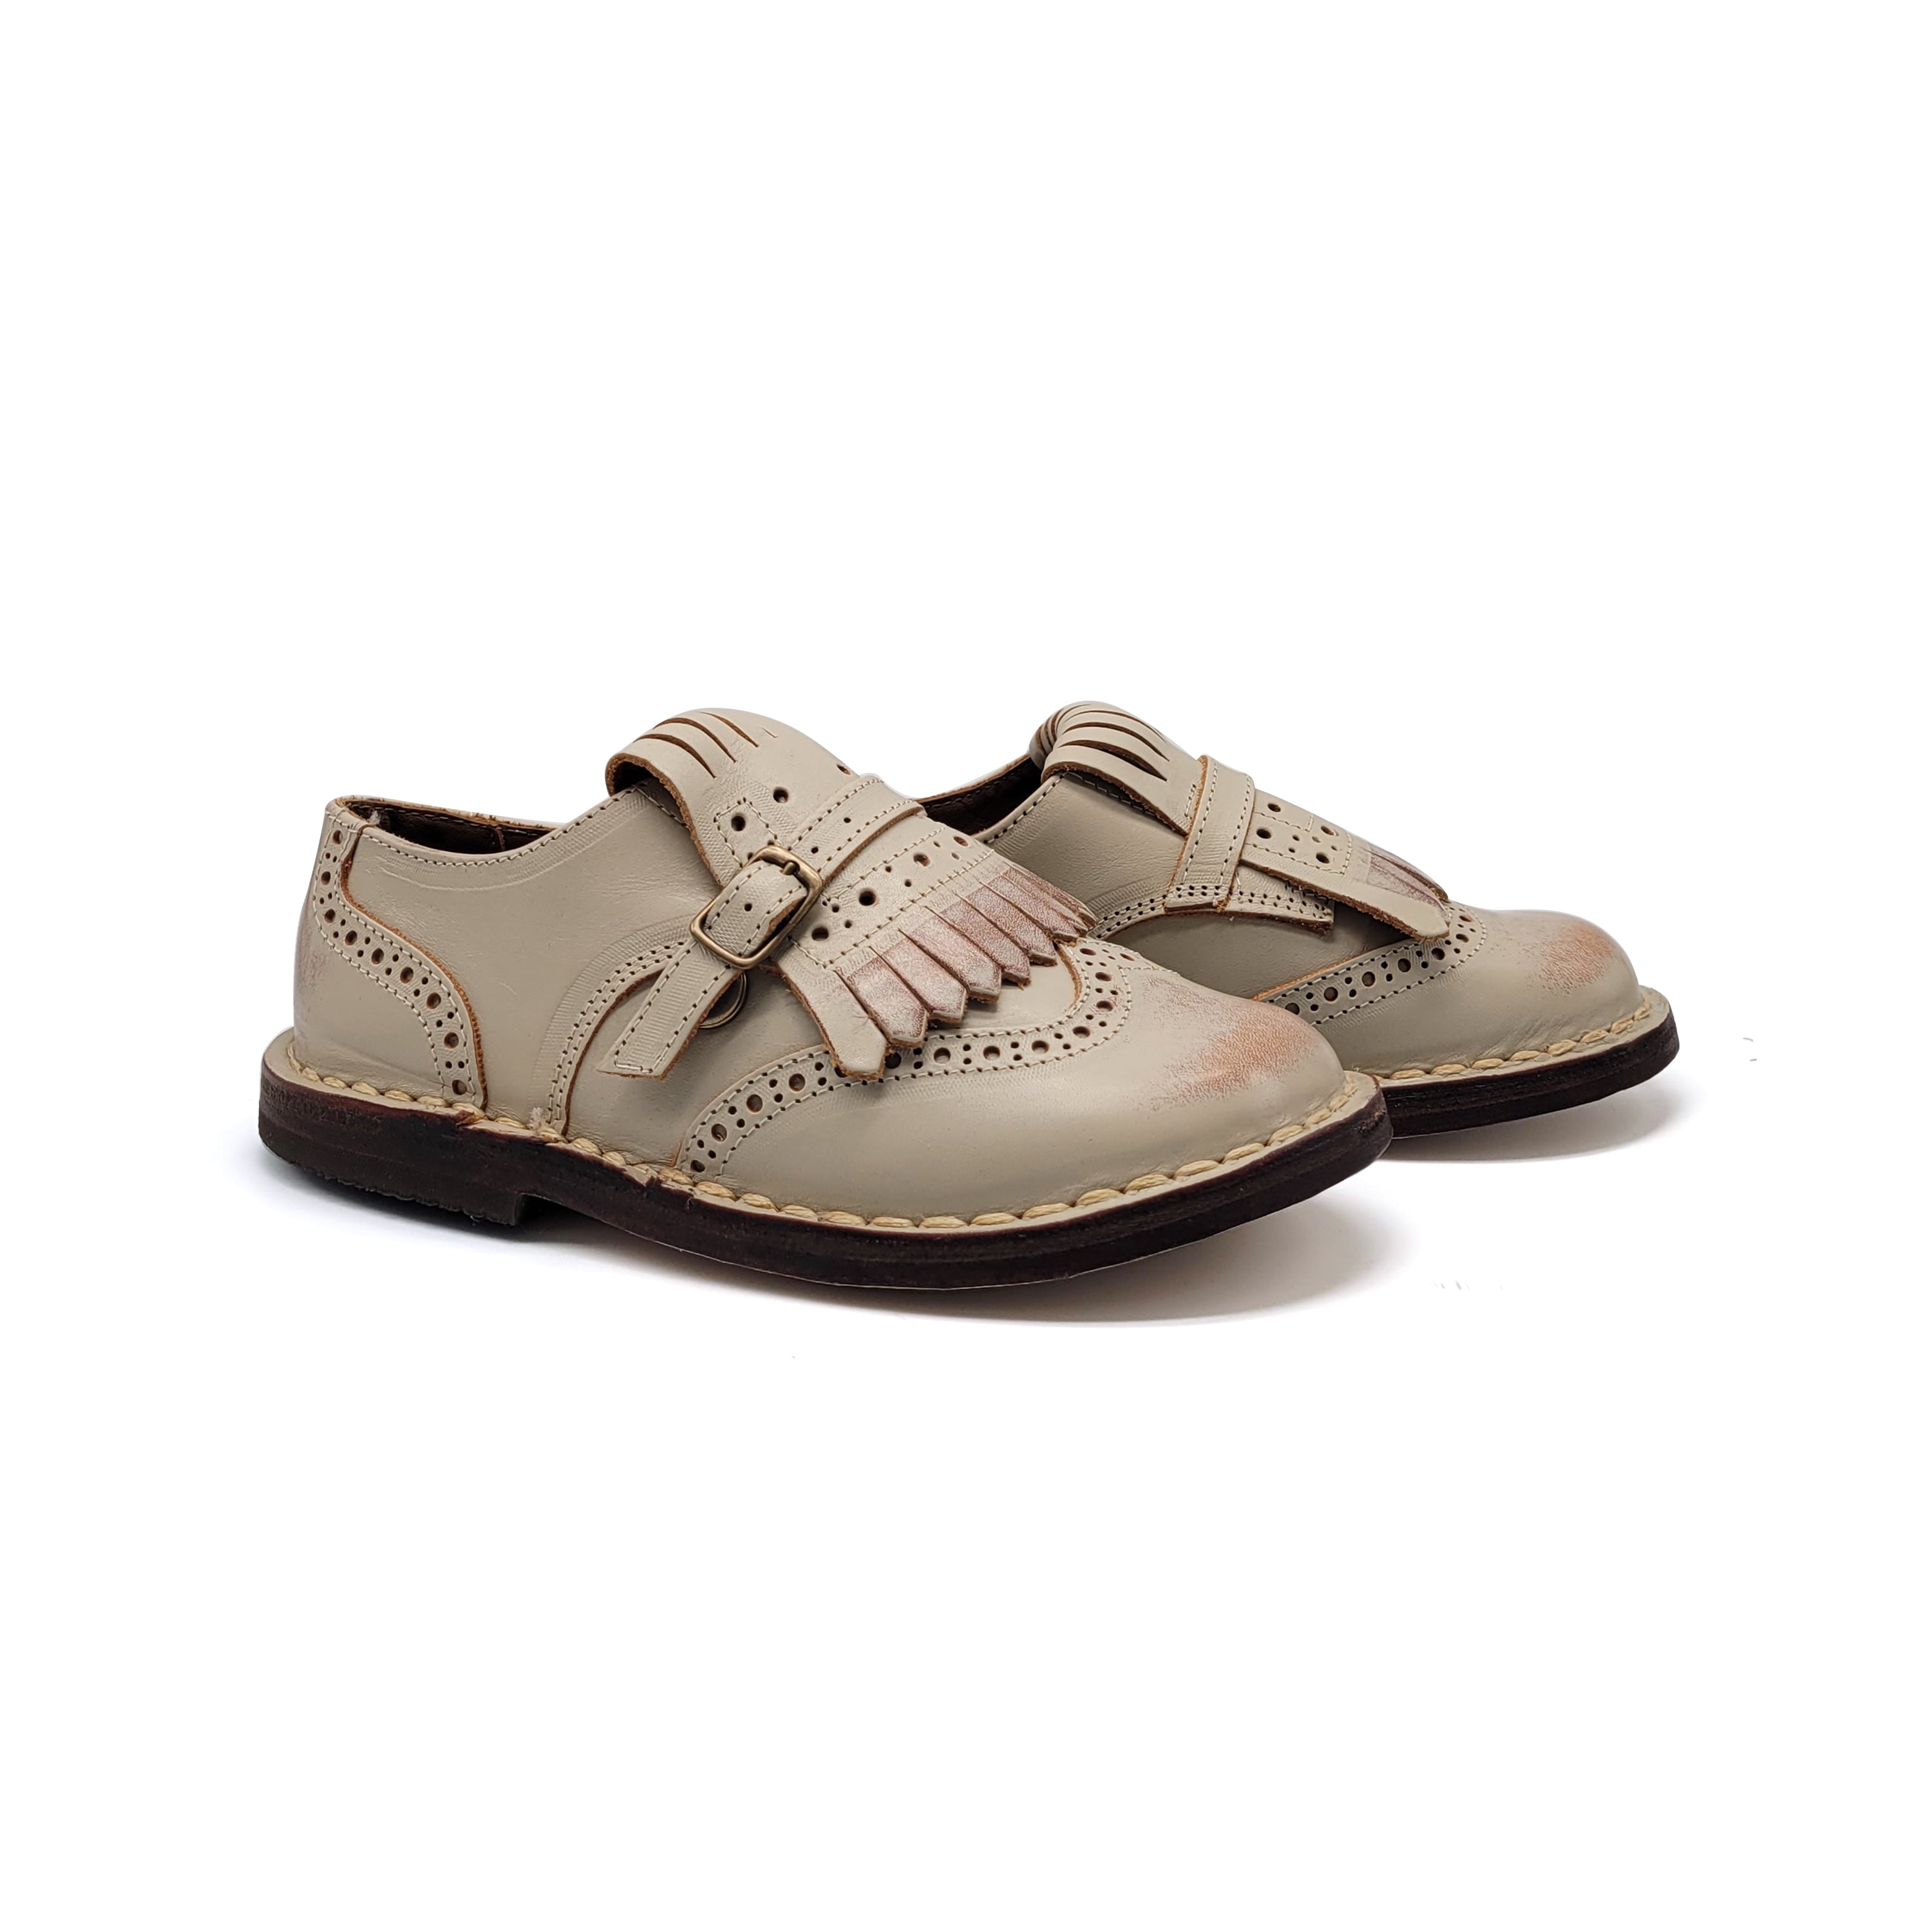 Pèpè two-tone leather crib shoes - Neutrals